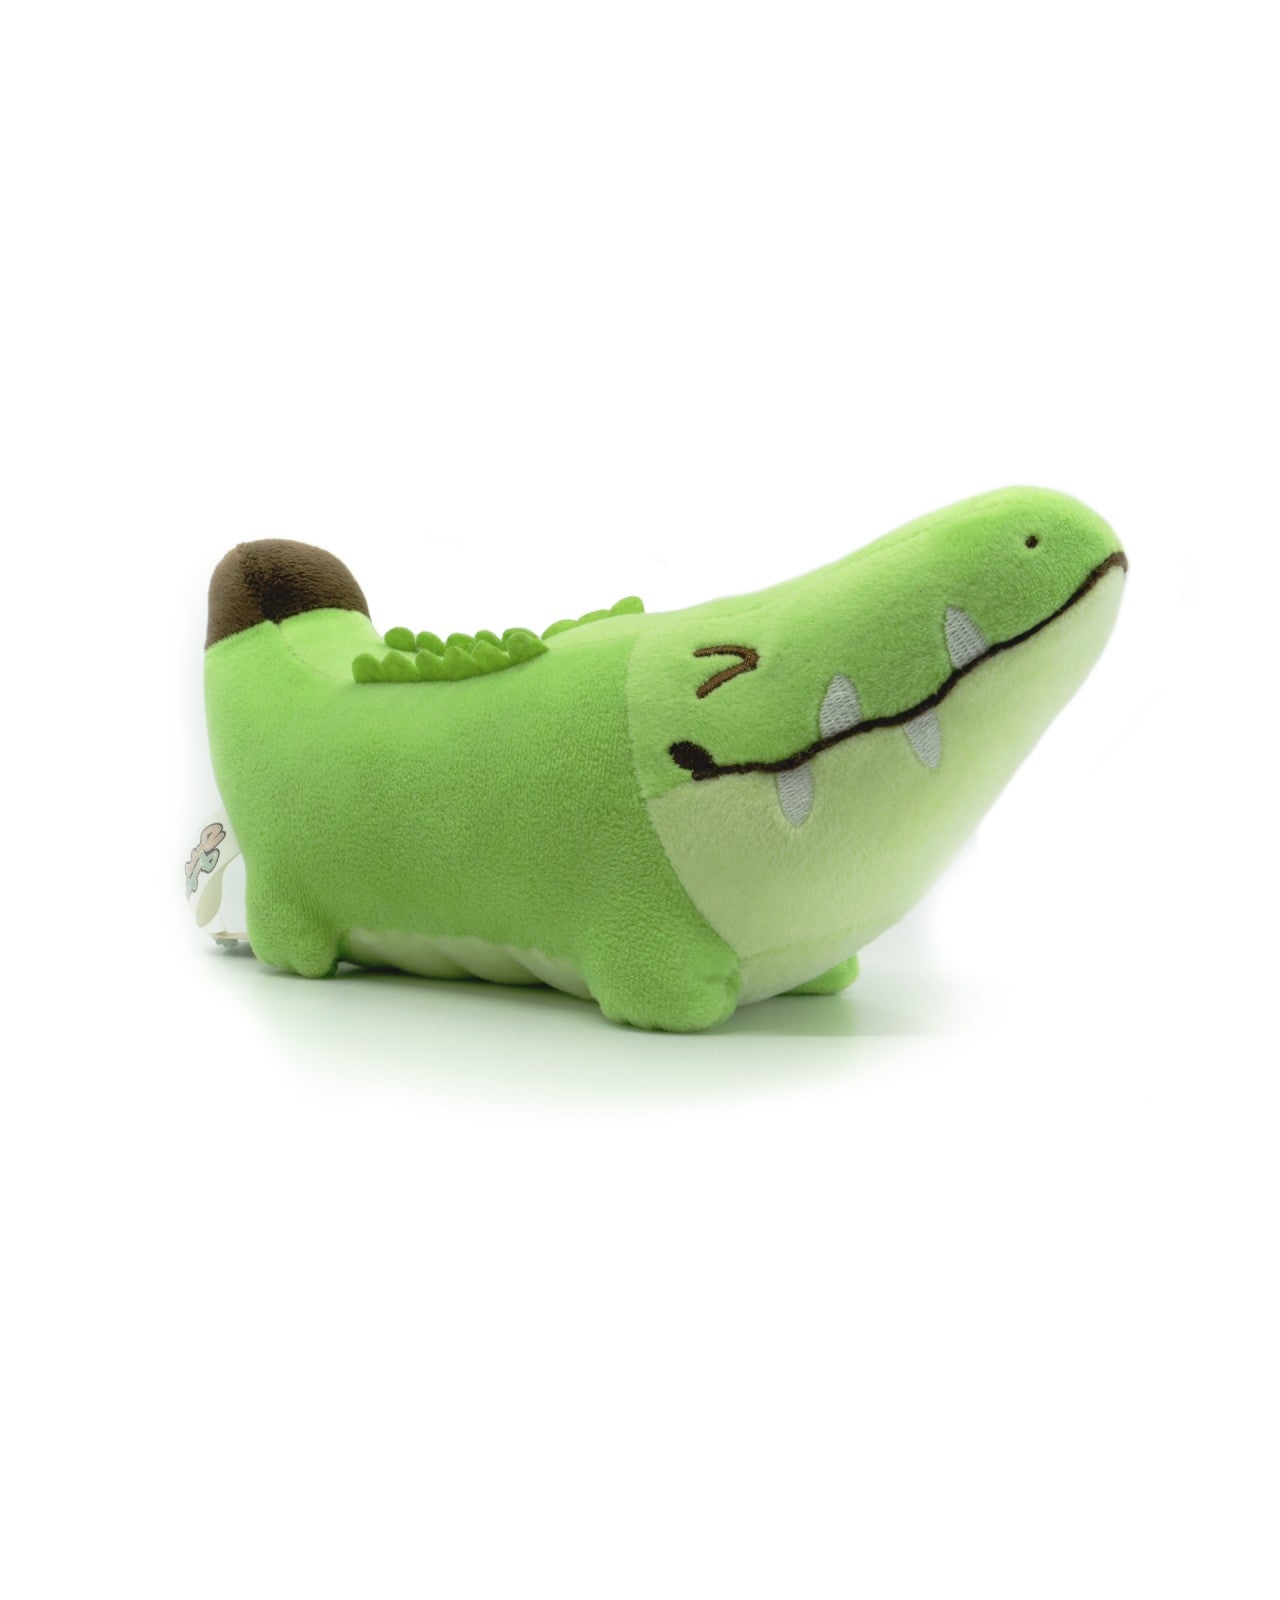 banana crocodile plush